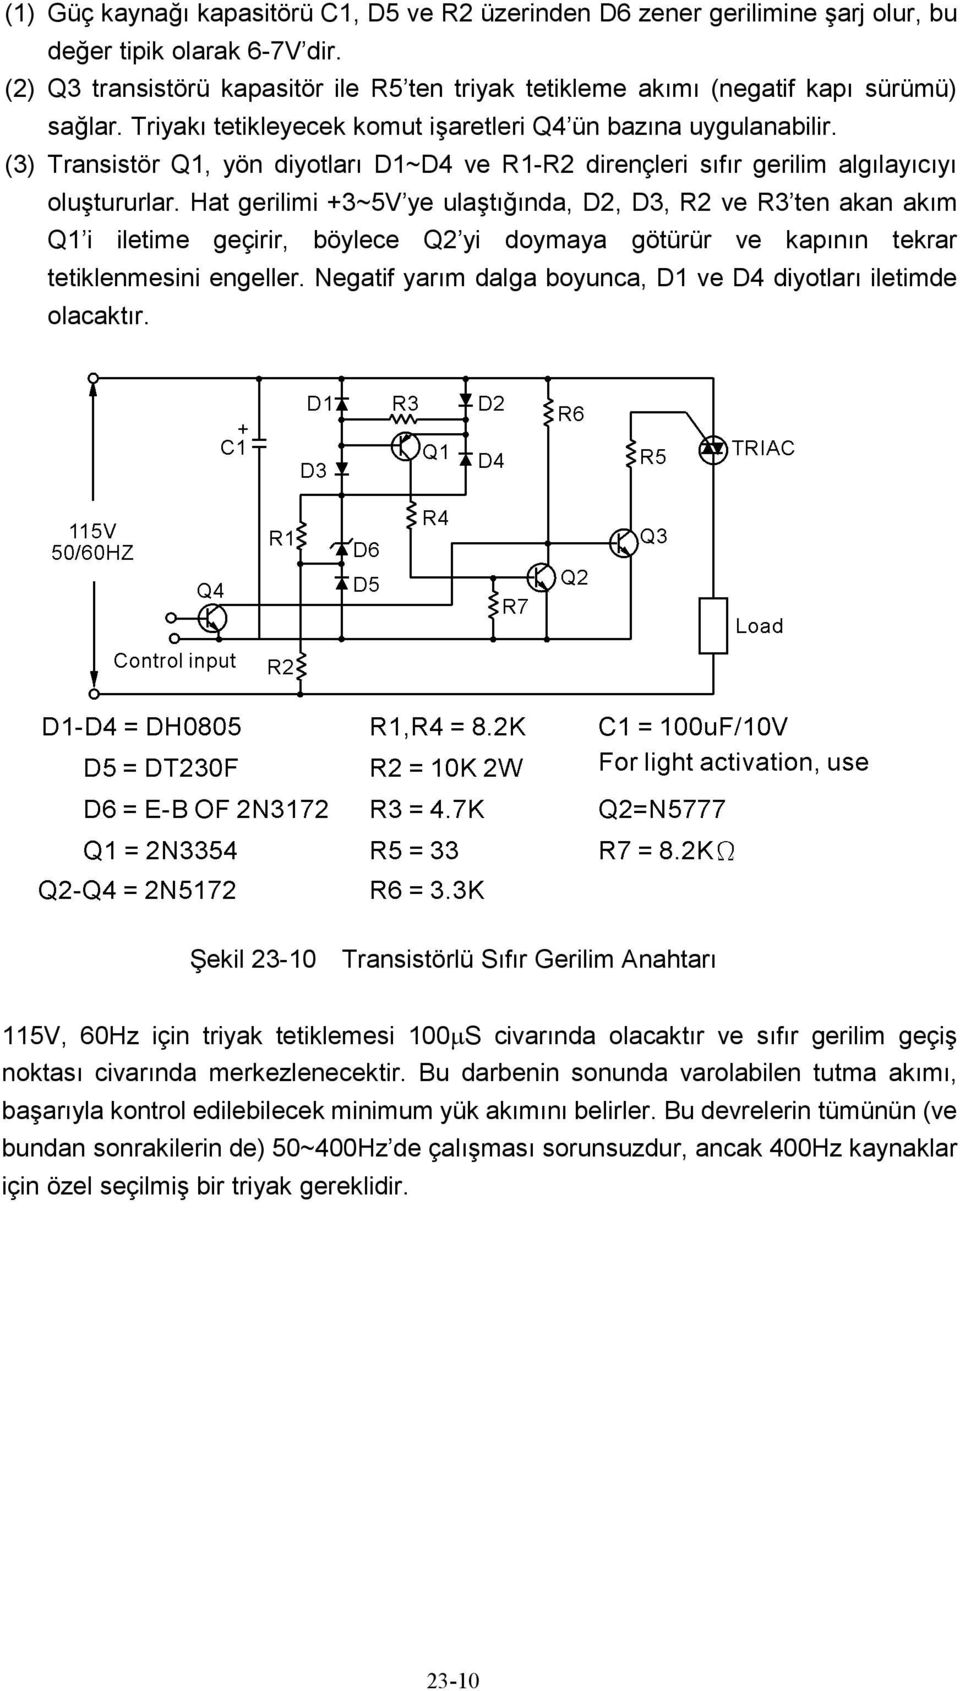 (3) Transistör Q1, yön diyotları D1~D4 ve R1-R2 dirençleri sıfır gerilim algılayıcıyı oluştururlar.